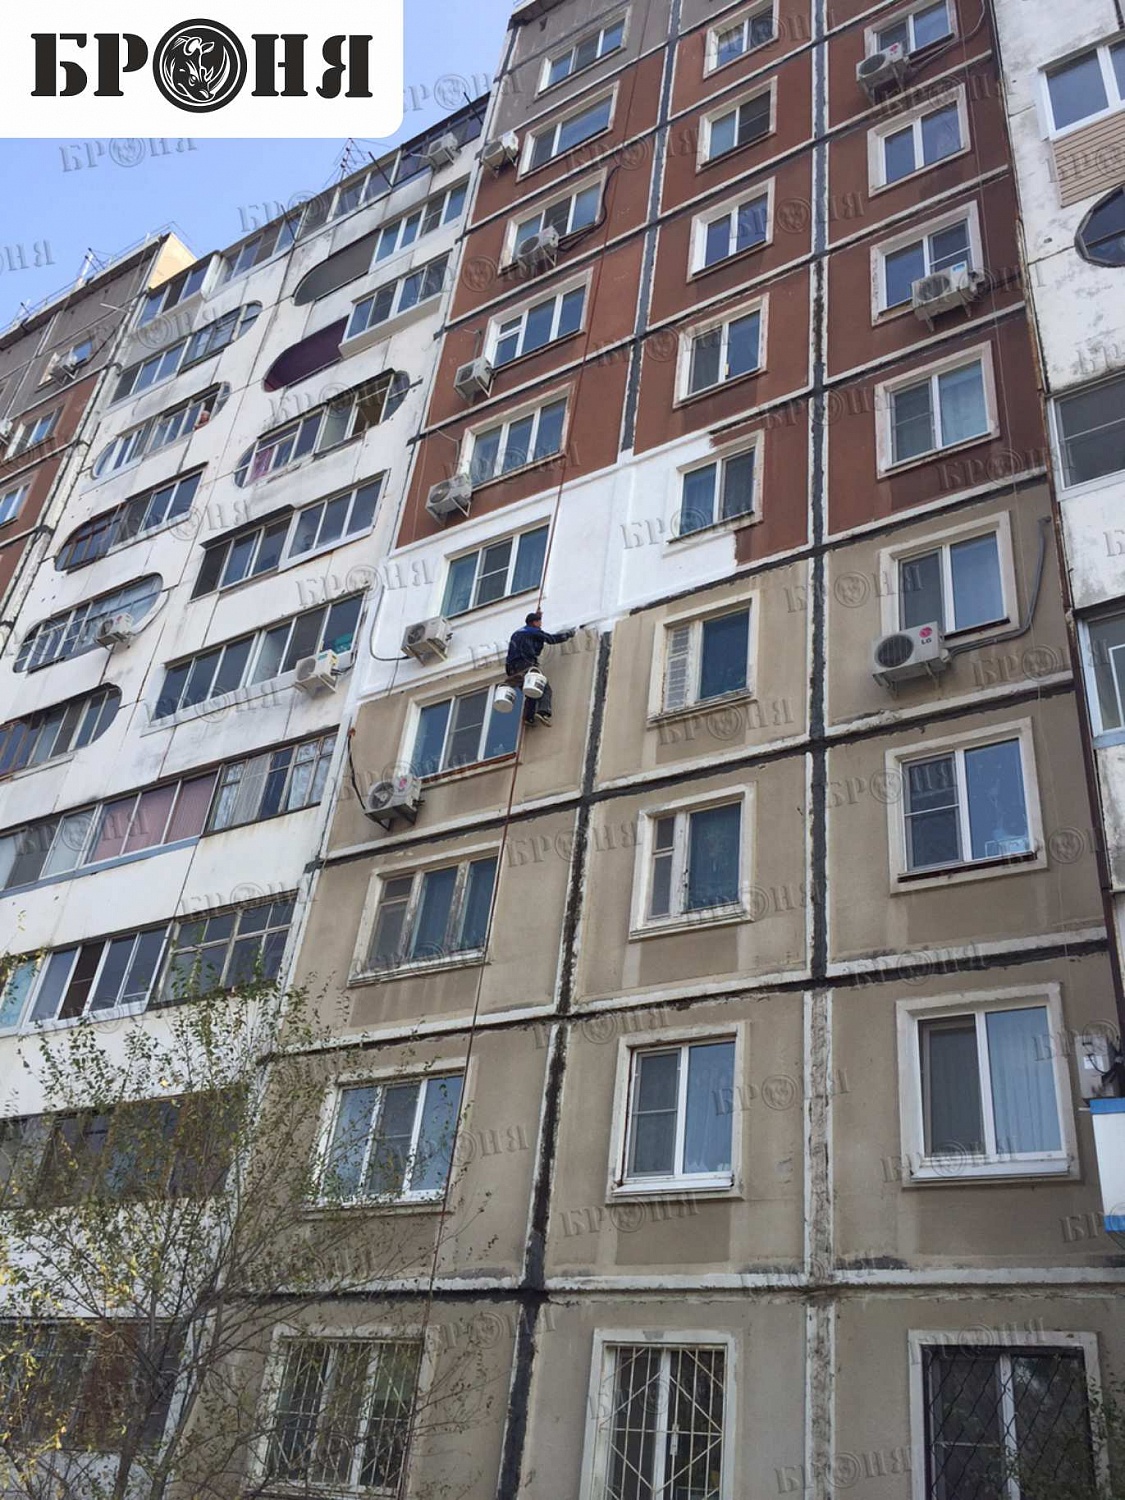 Хабаровск, утепление квартир многоэтажного жилого дома